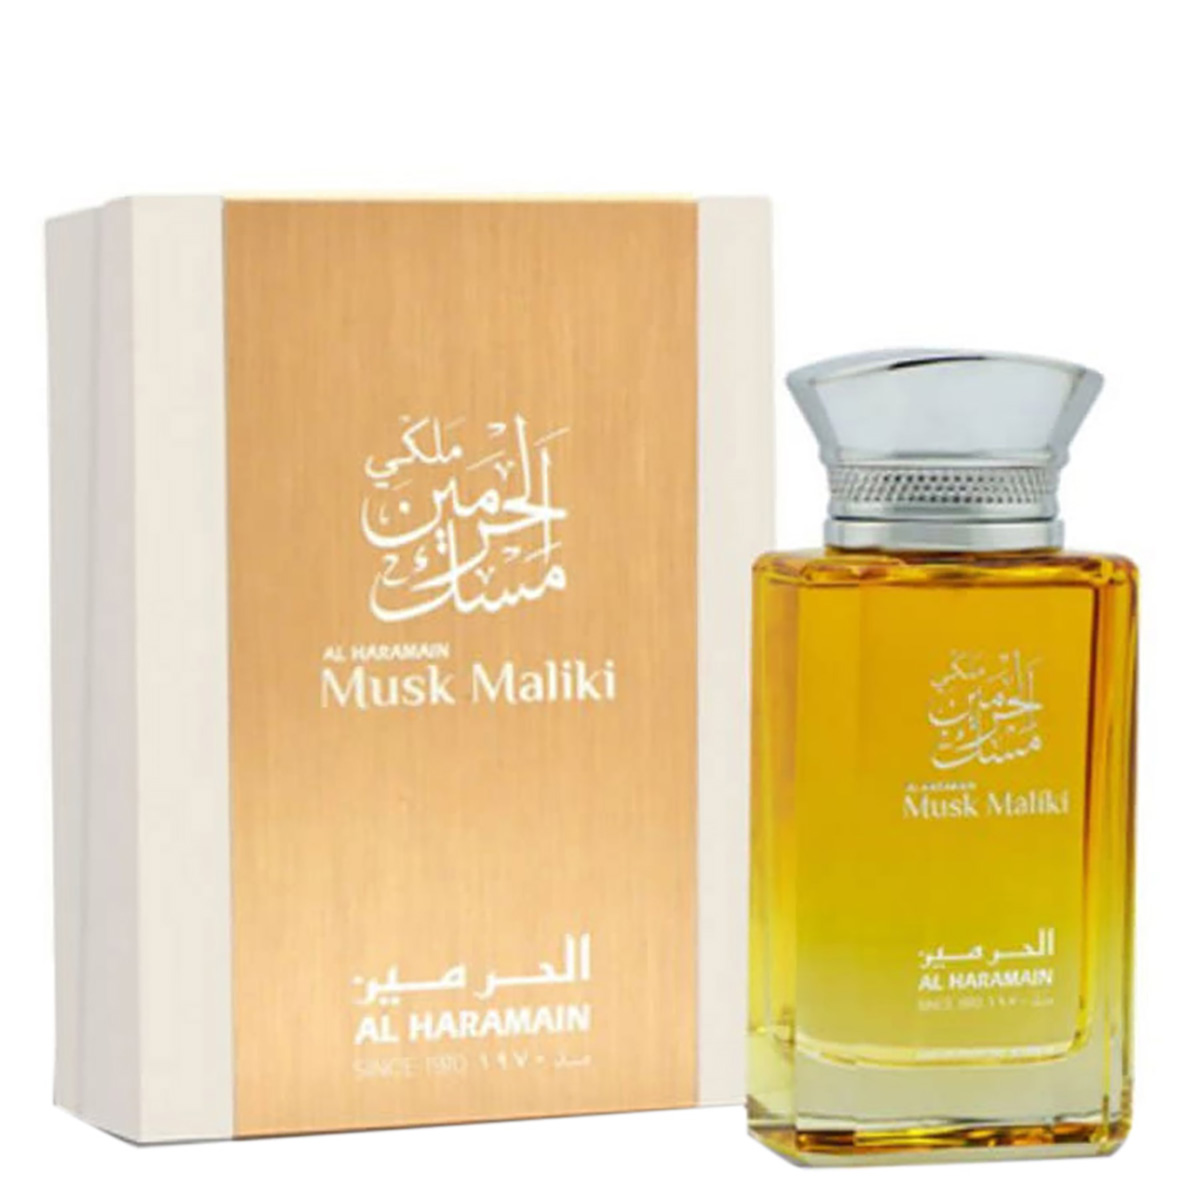 Al Haramain Unisex Musk Maliki Edp 3.4 oz Fragrances 6291100130986 In Green / Violet